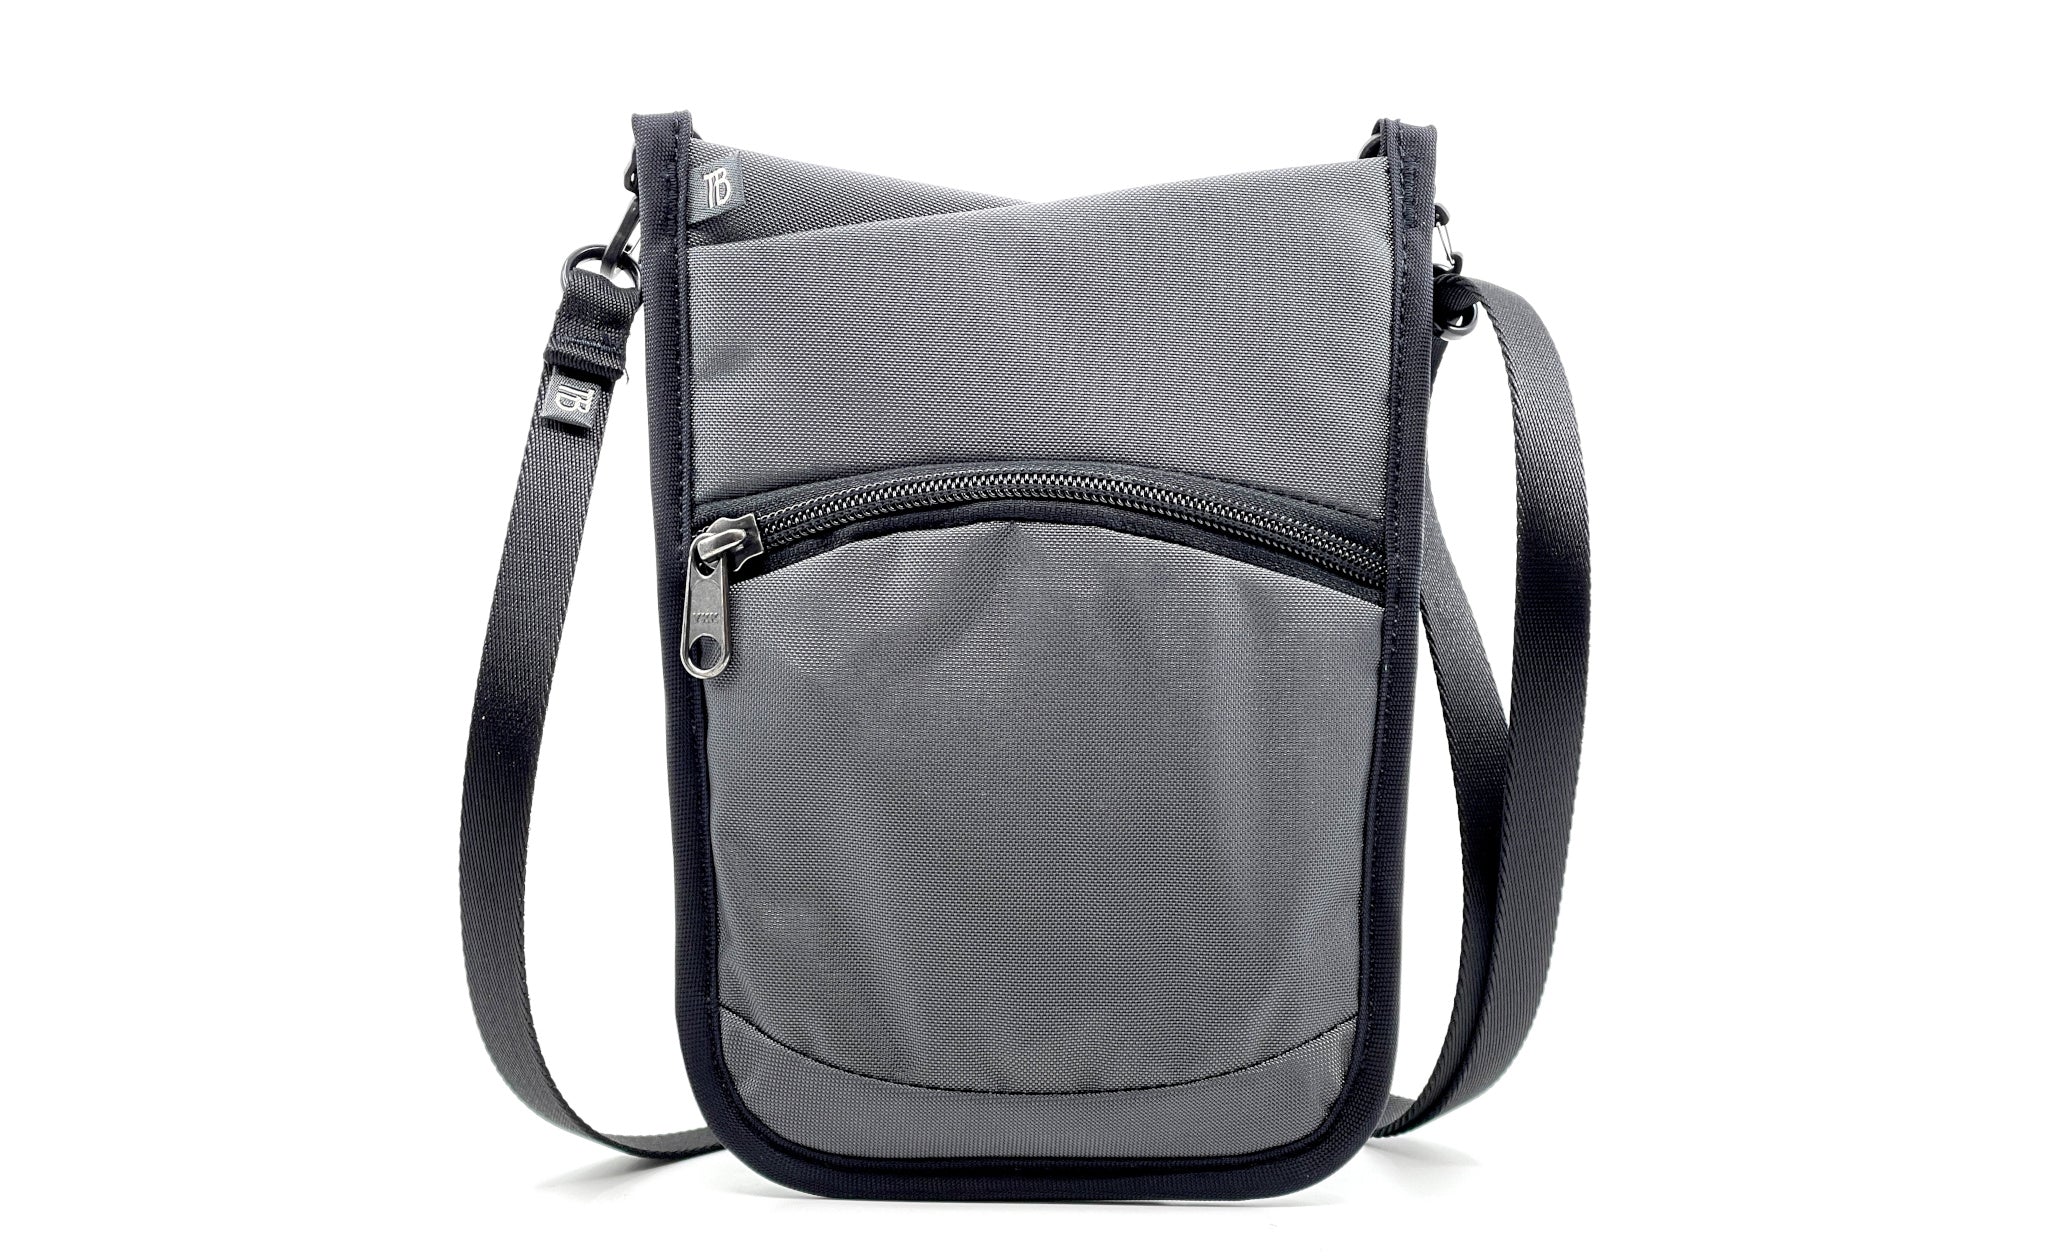 P.I.K.A. (Phone, ID, Keys, Accessories) Mini Pouch Bag